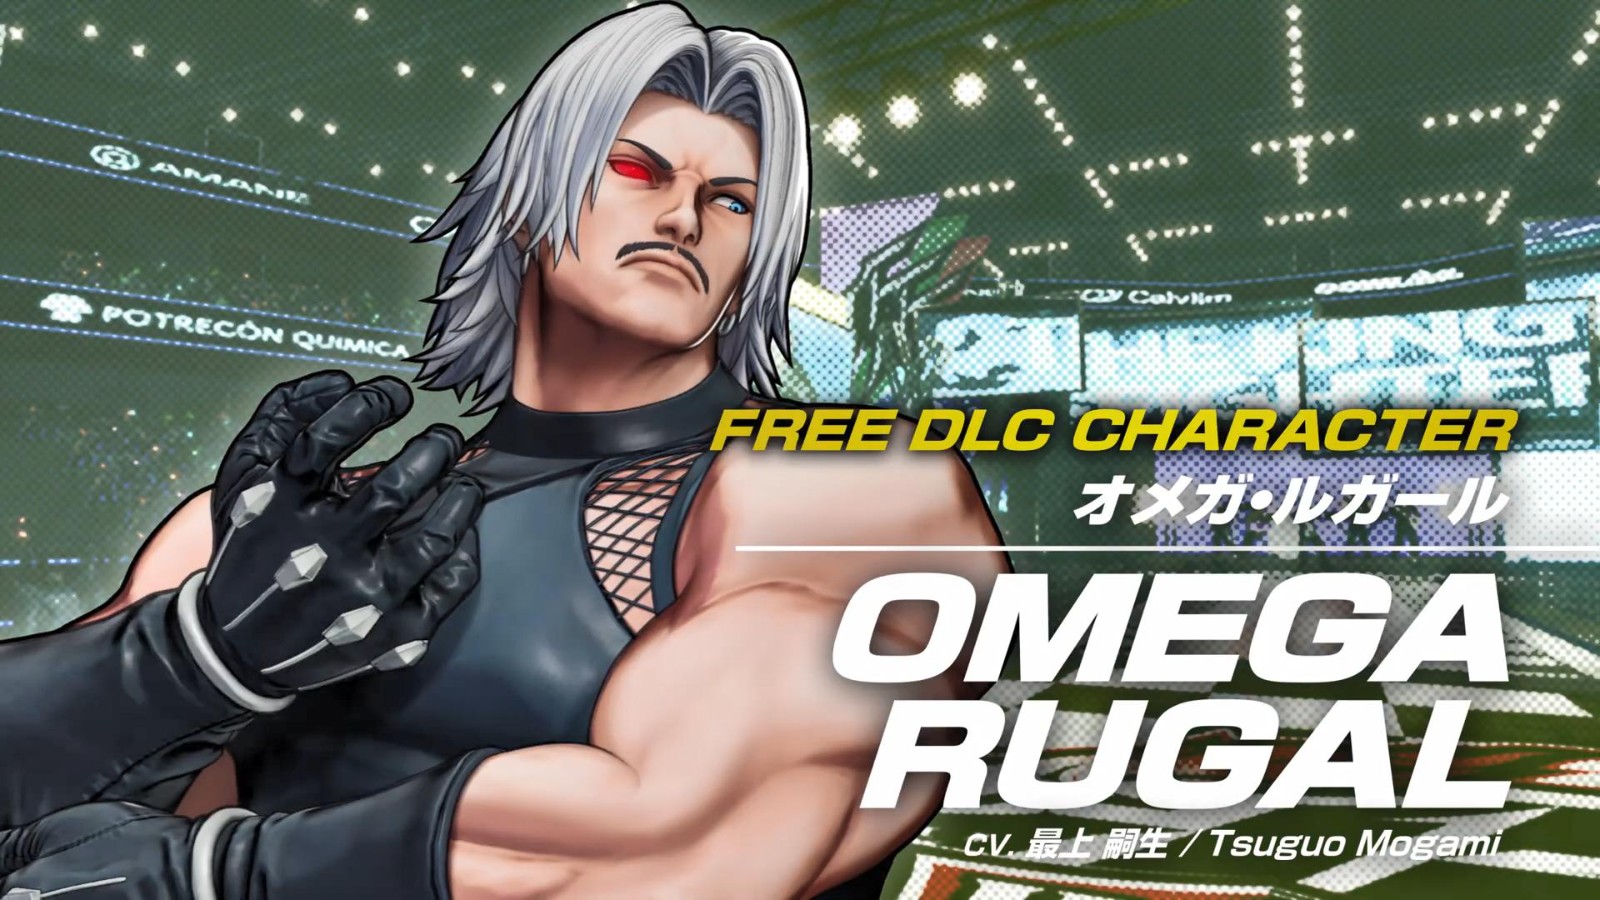 《拳皇15》公布免费DLC角色欧米茄·卢卡尔 4月14日上线